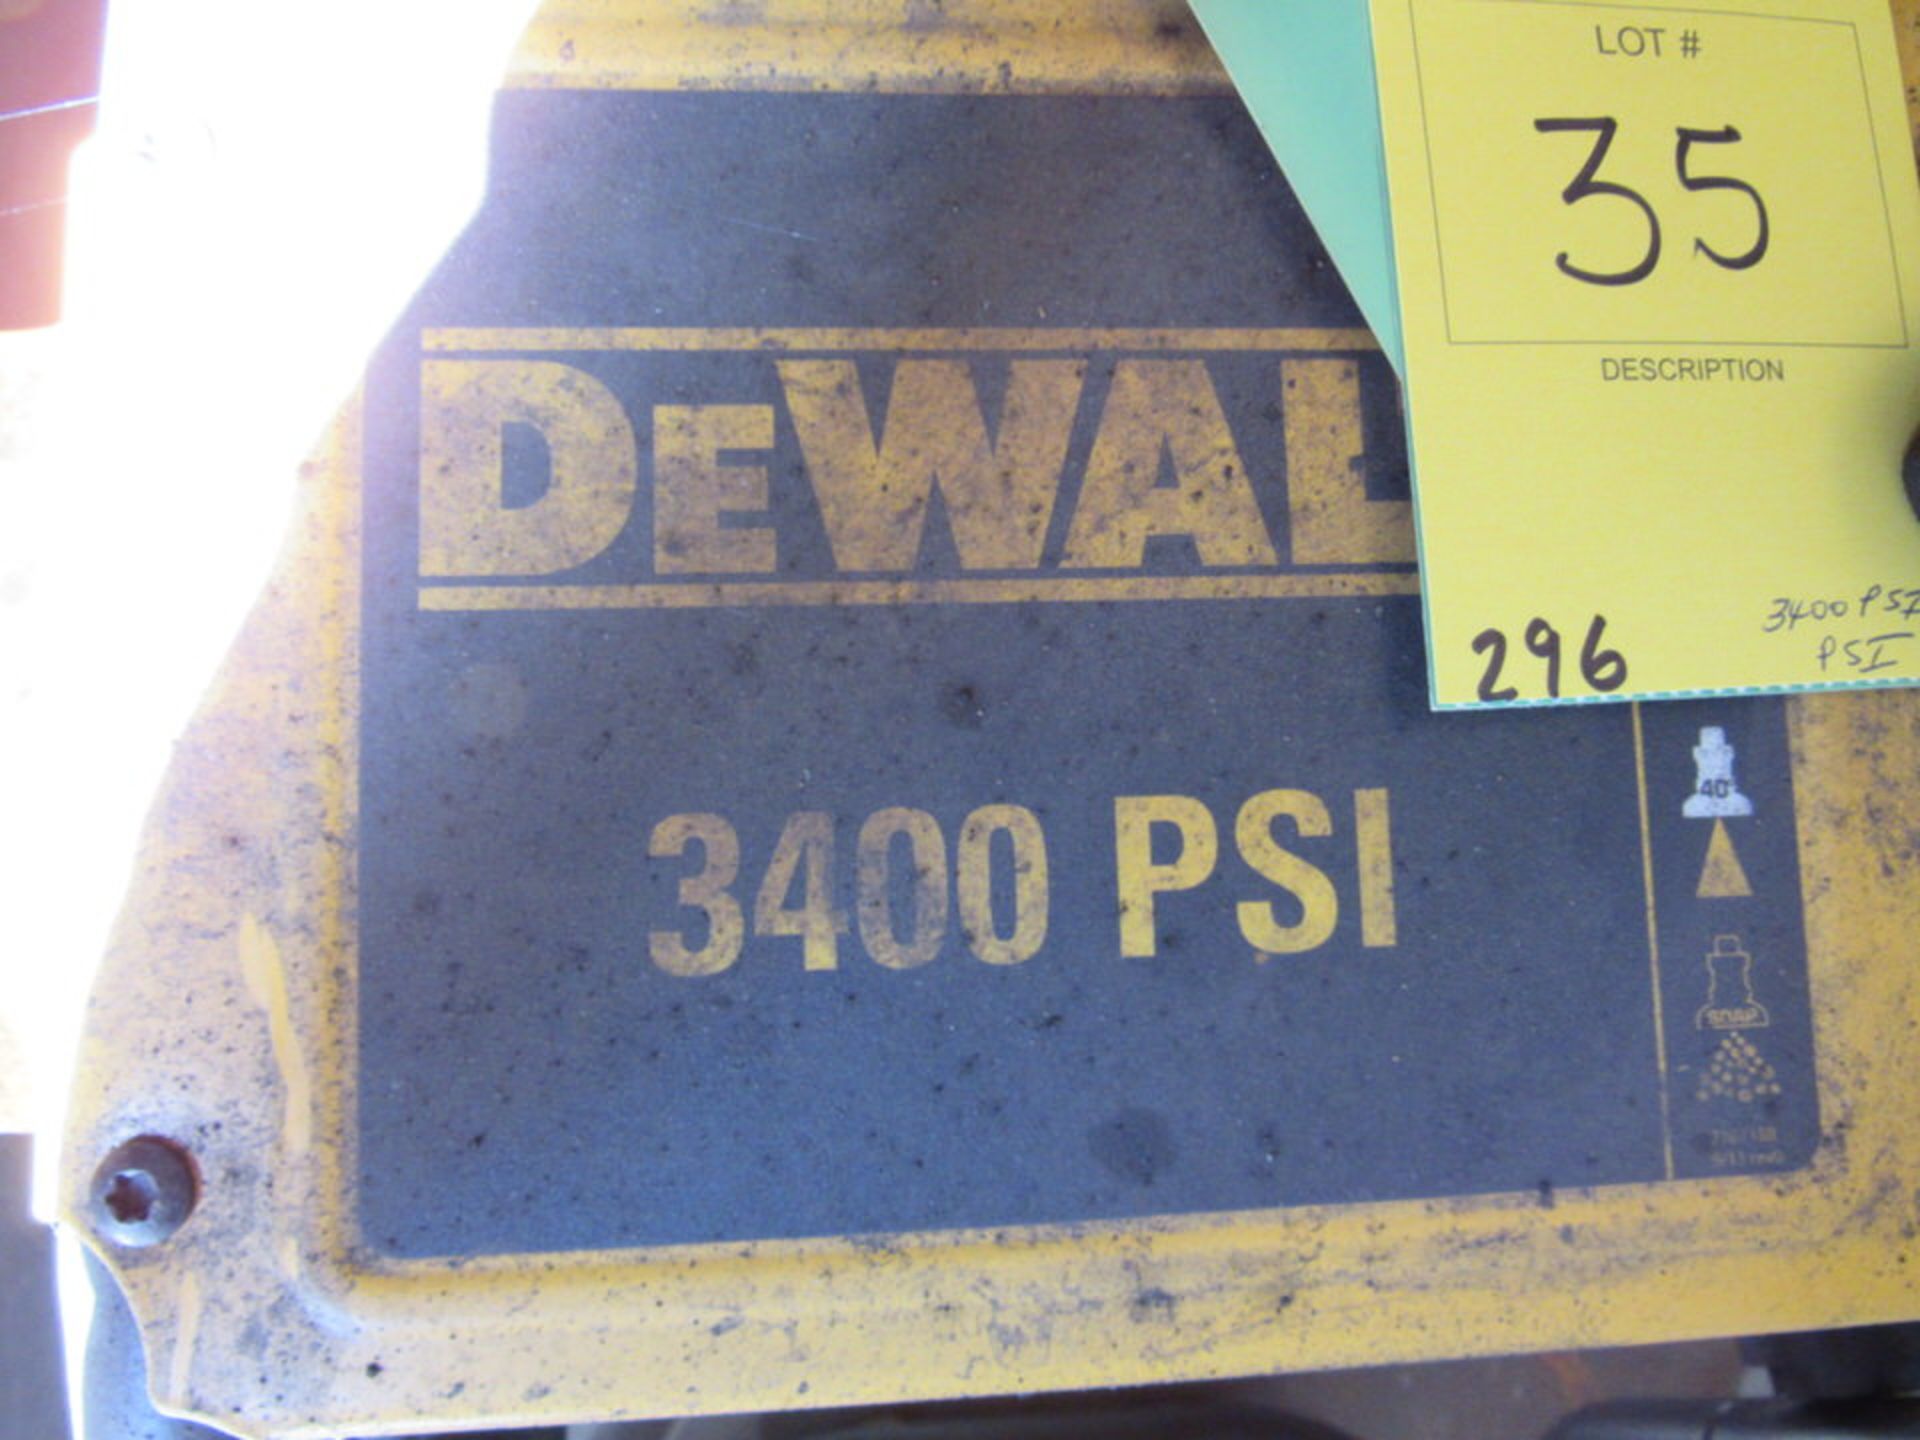 3400 PSI Dewalt Pressure Washer - Image 4 of 4